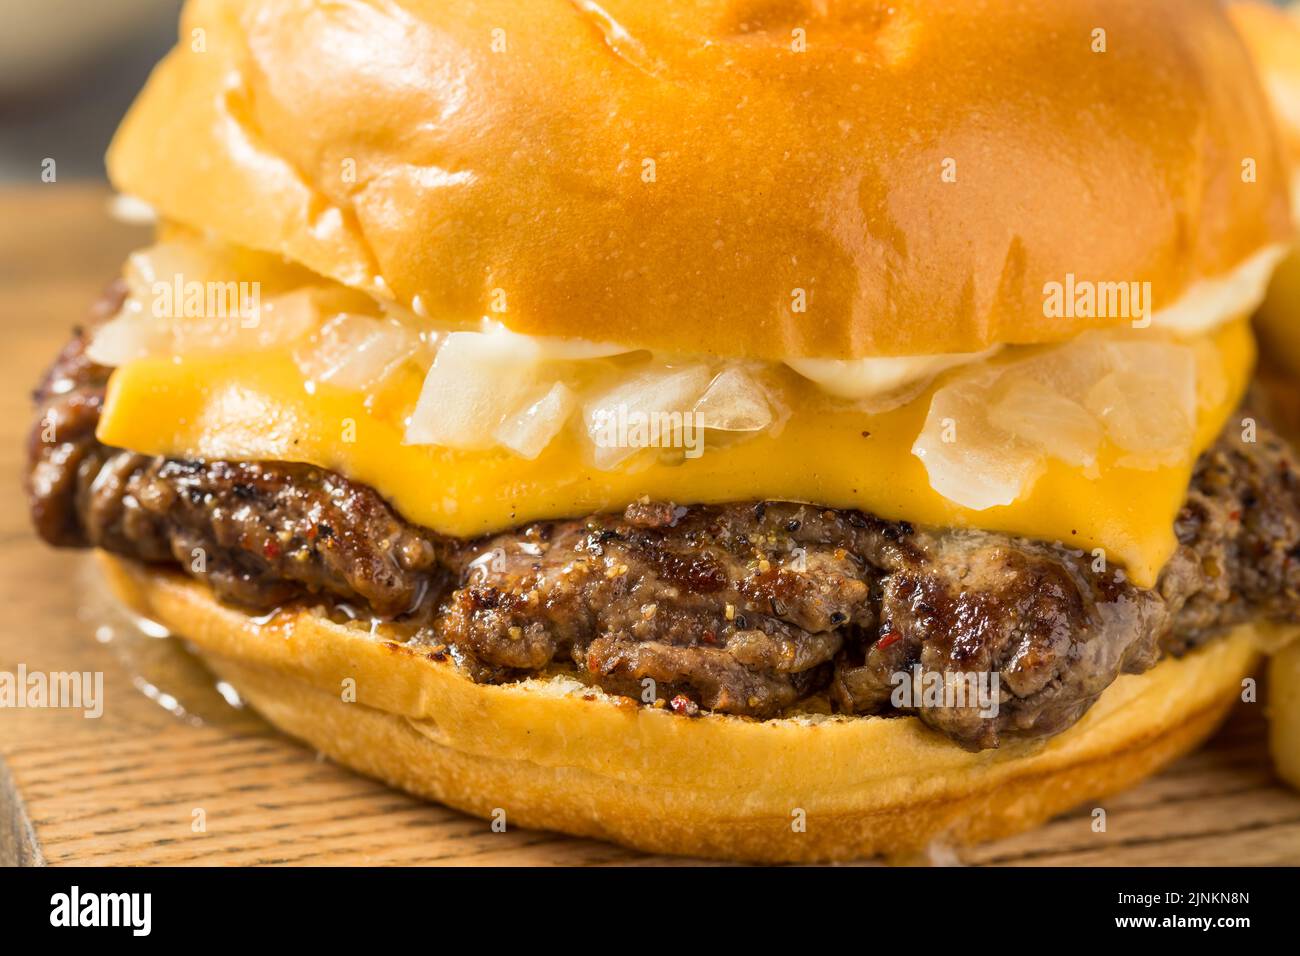 Hamburger au beurre du Wisconsin fait maison avec fromage et frites Banque D'Images